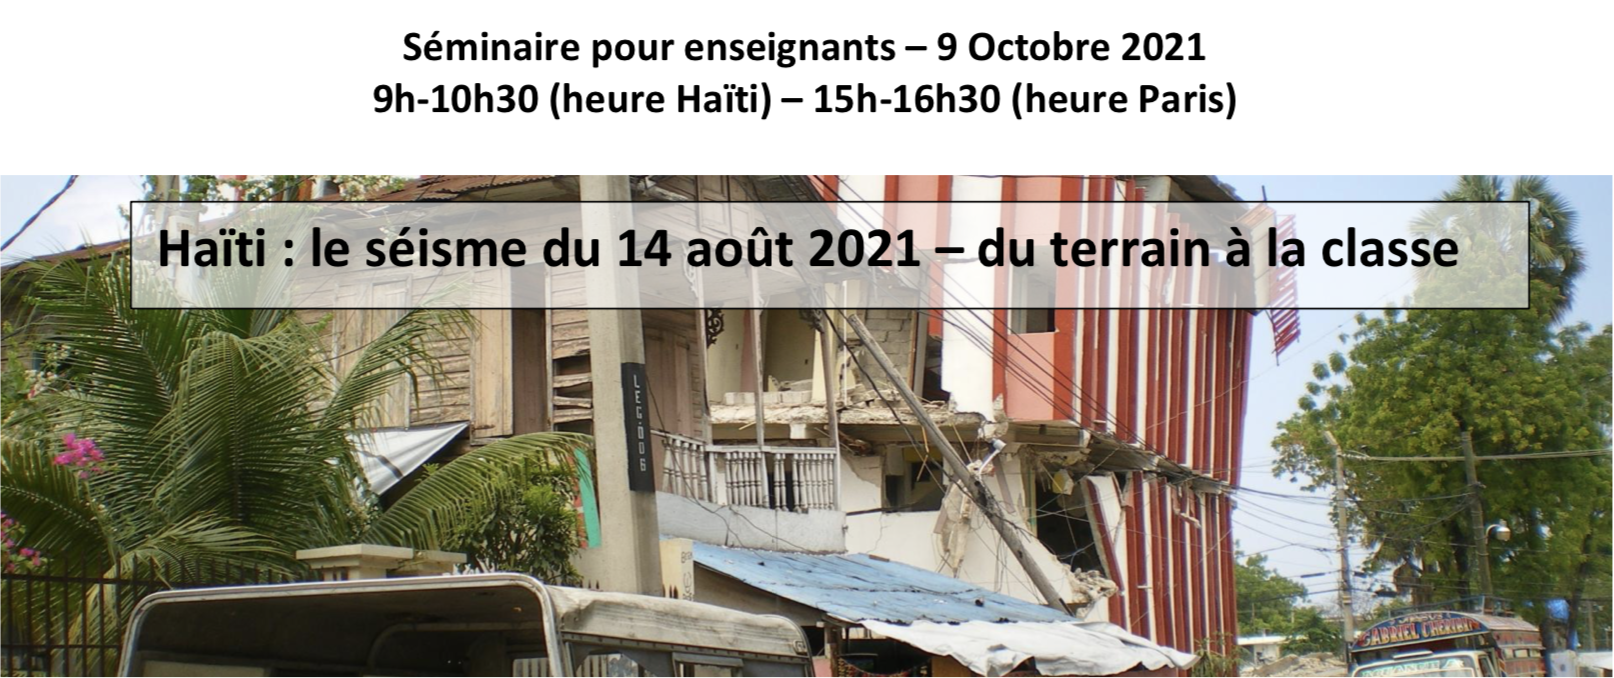 Retour sur le séisme survenu en Haïti le 14 août 2021 - séminaire en ligne